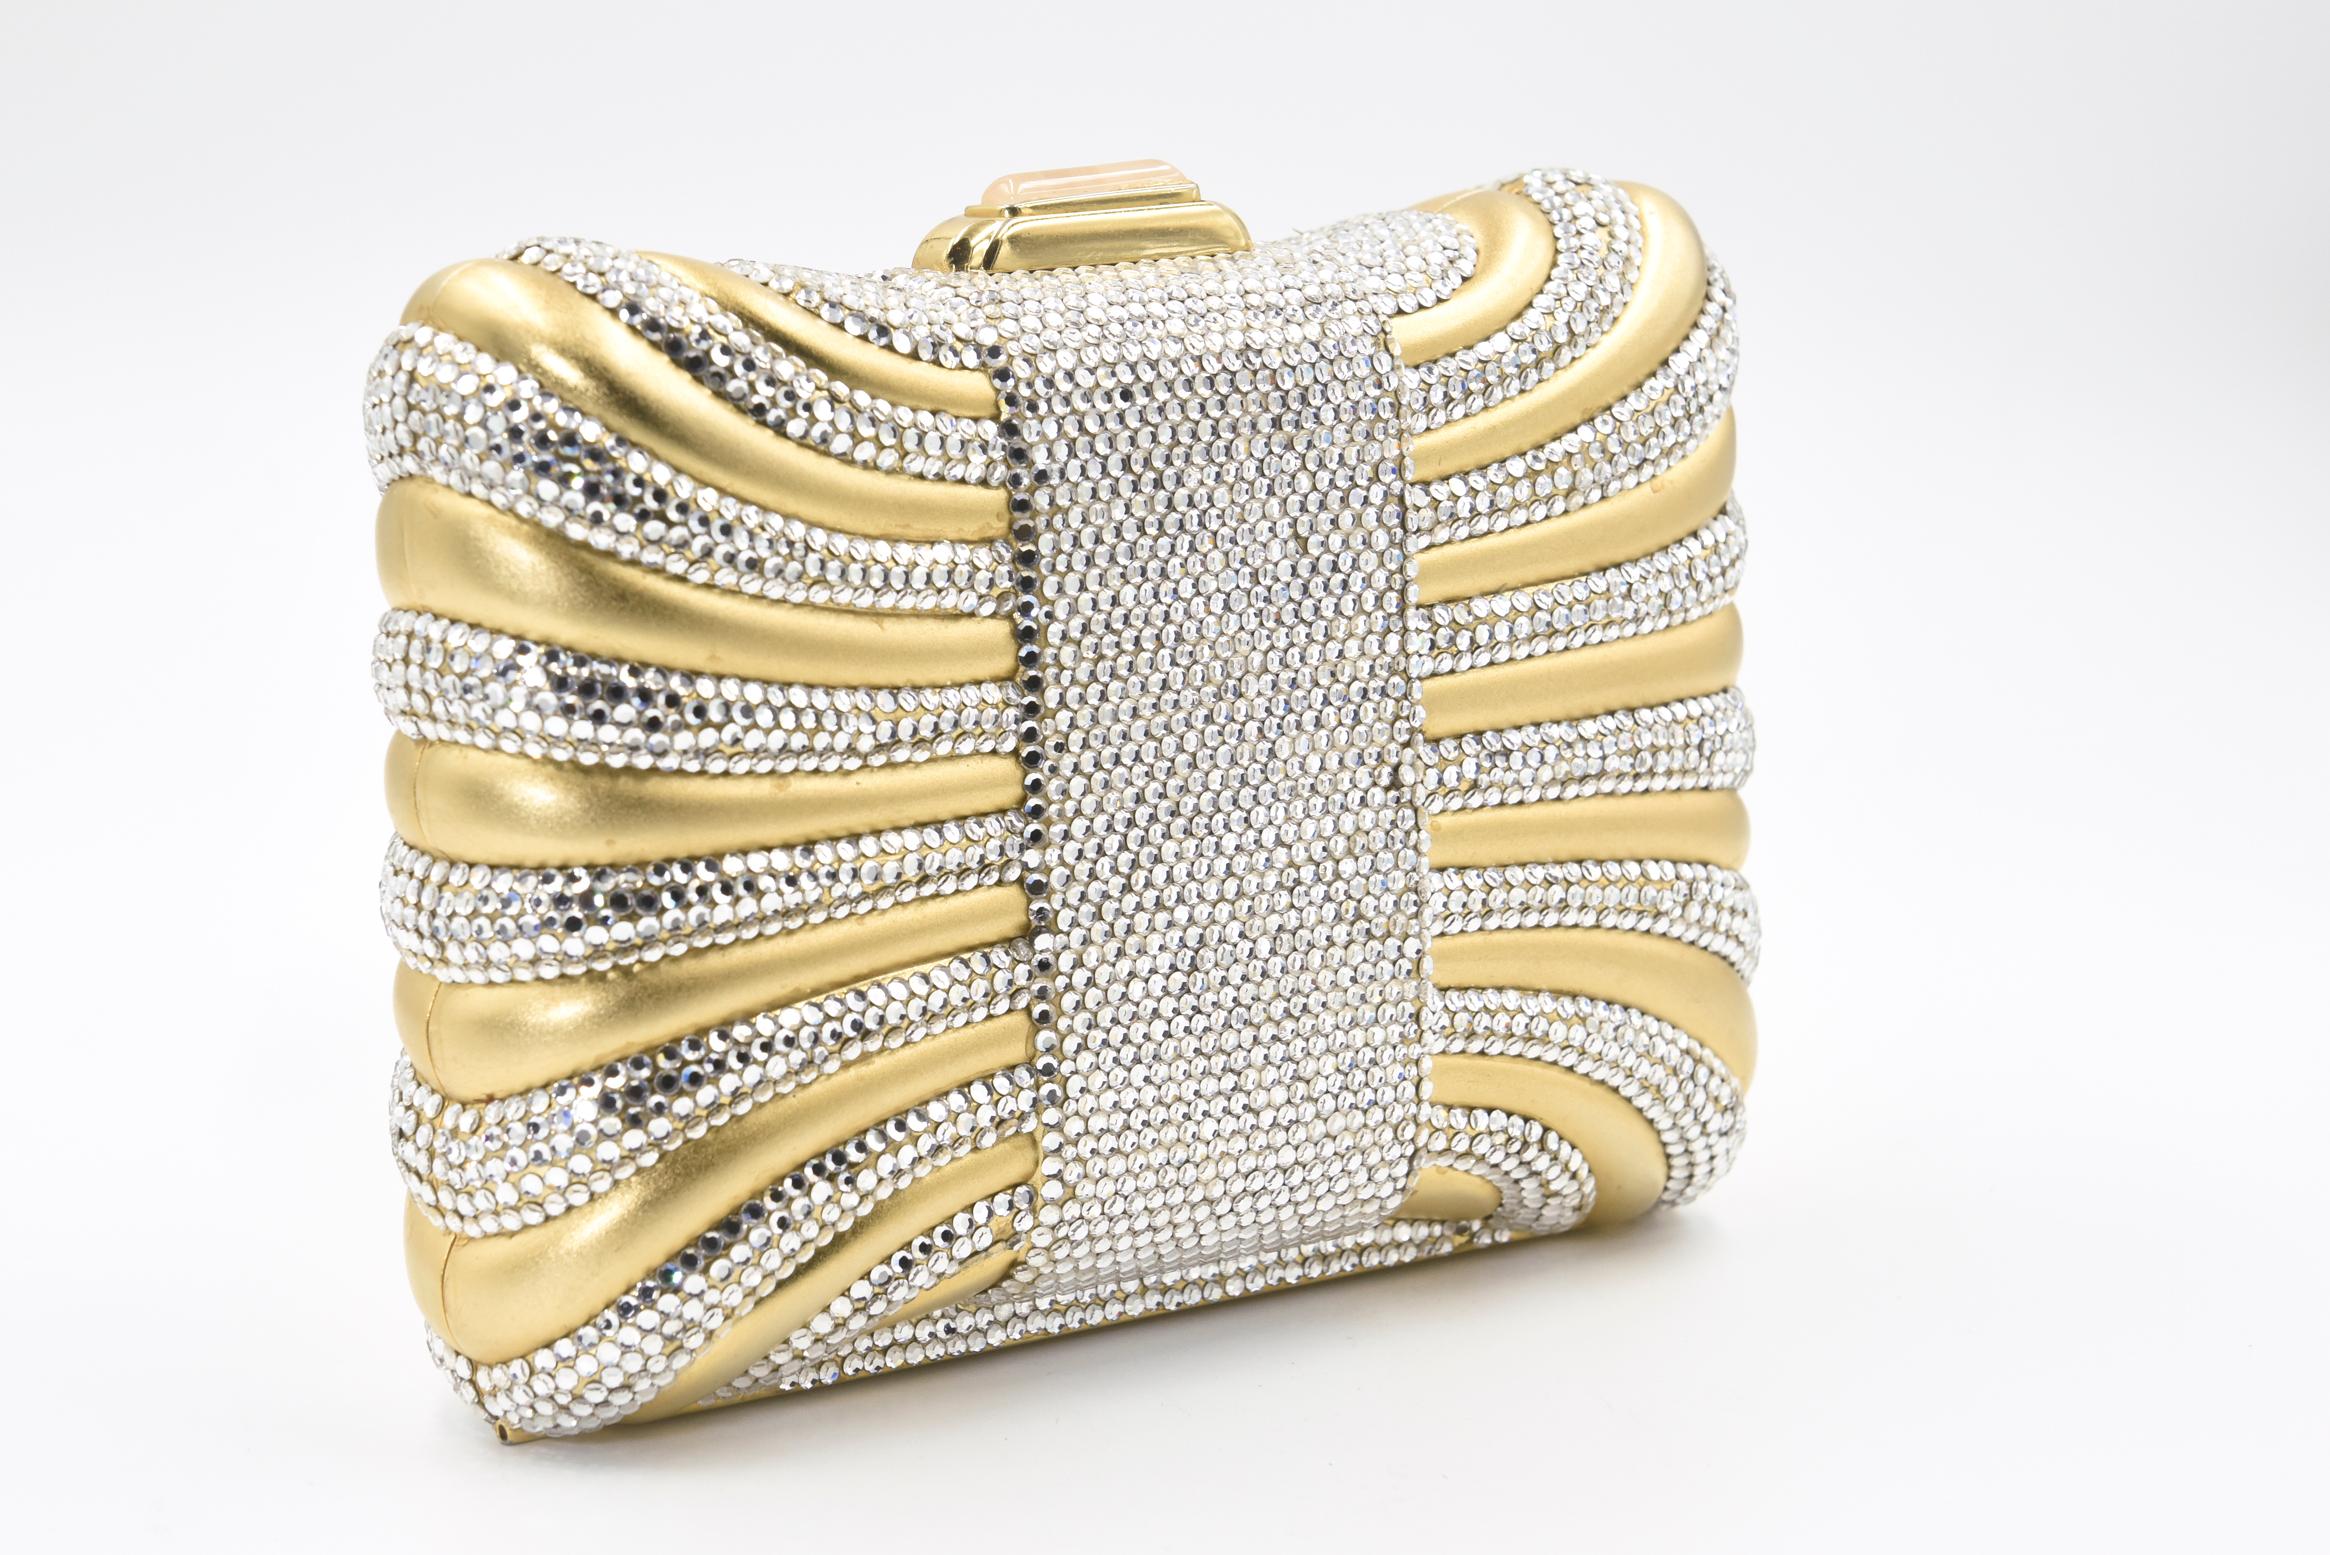 Die elegante Judith Leiber Minaudière sieht aus wie eine Geschenkbox oder ein Kissen mit einem Swarovski-Kristallband.  Die Tasche verfügt über einen Kristalldruckverschluss mit  goldene Beschläge, der Schulterriemen, der in das Innere der Tasche